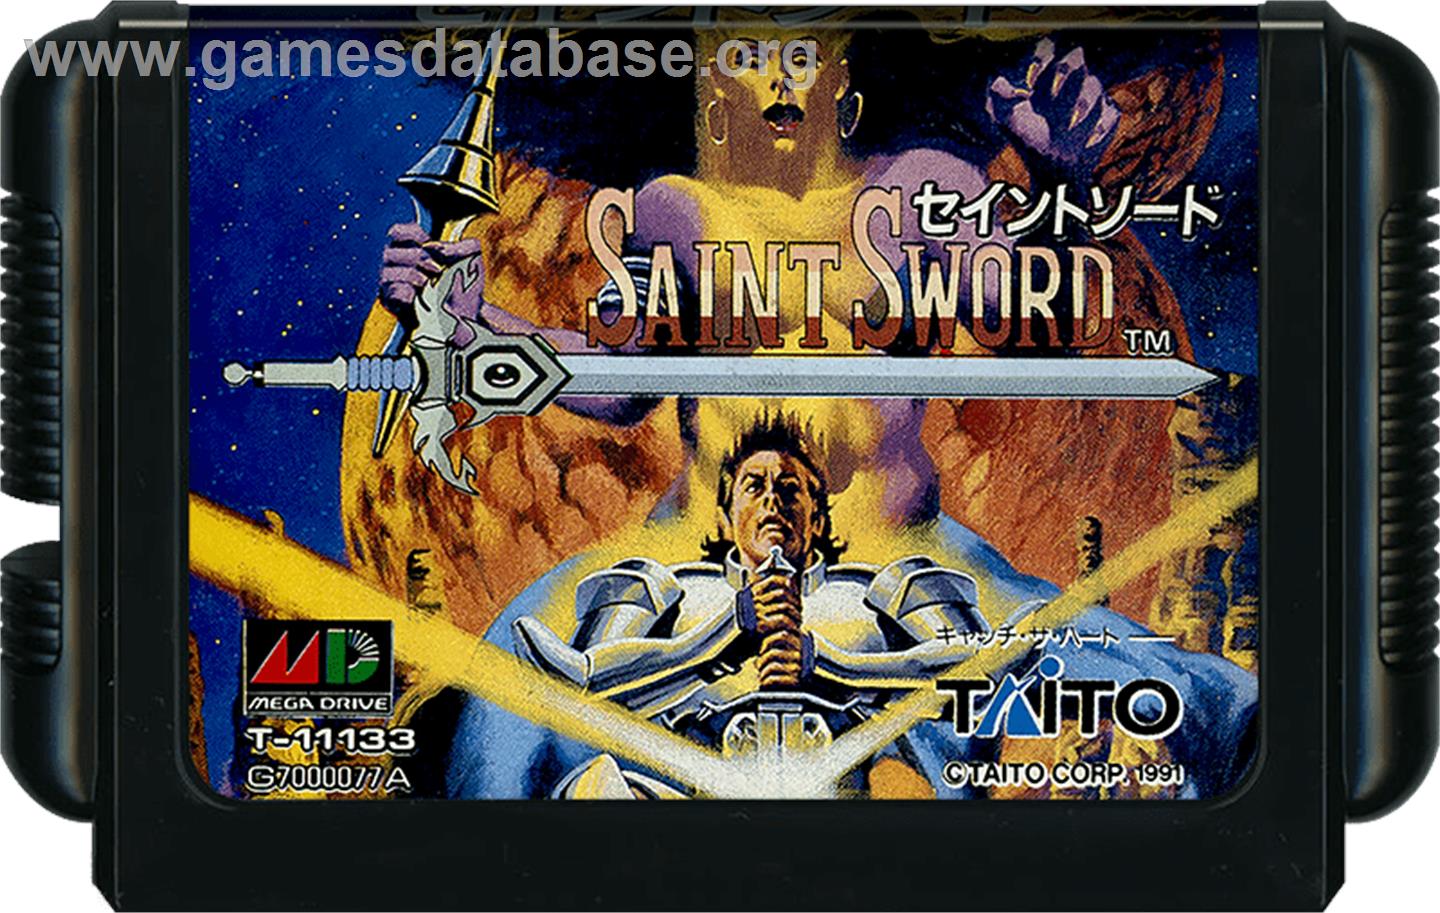 Saint Sword - Sega Genesis - Artwork - Cartridge